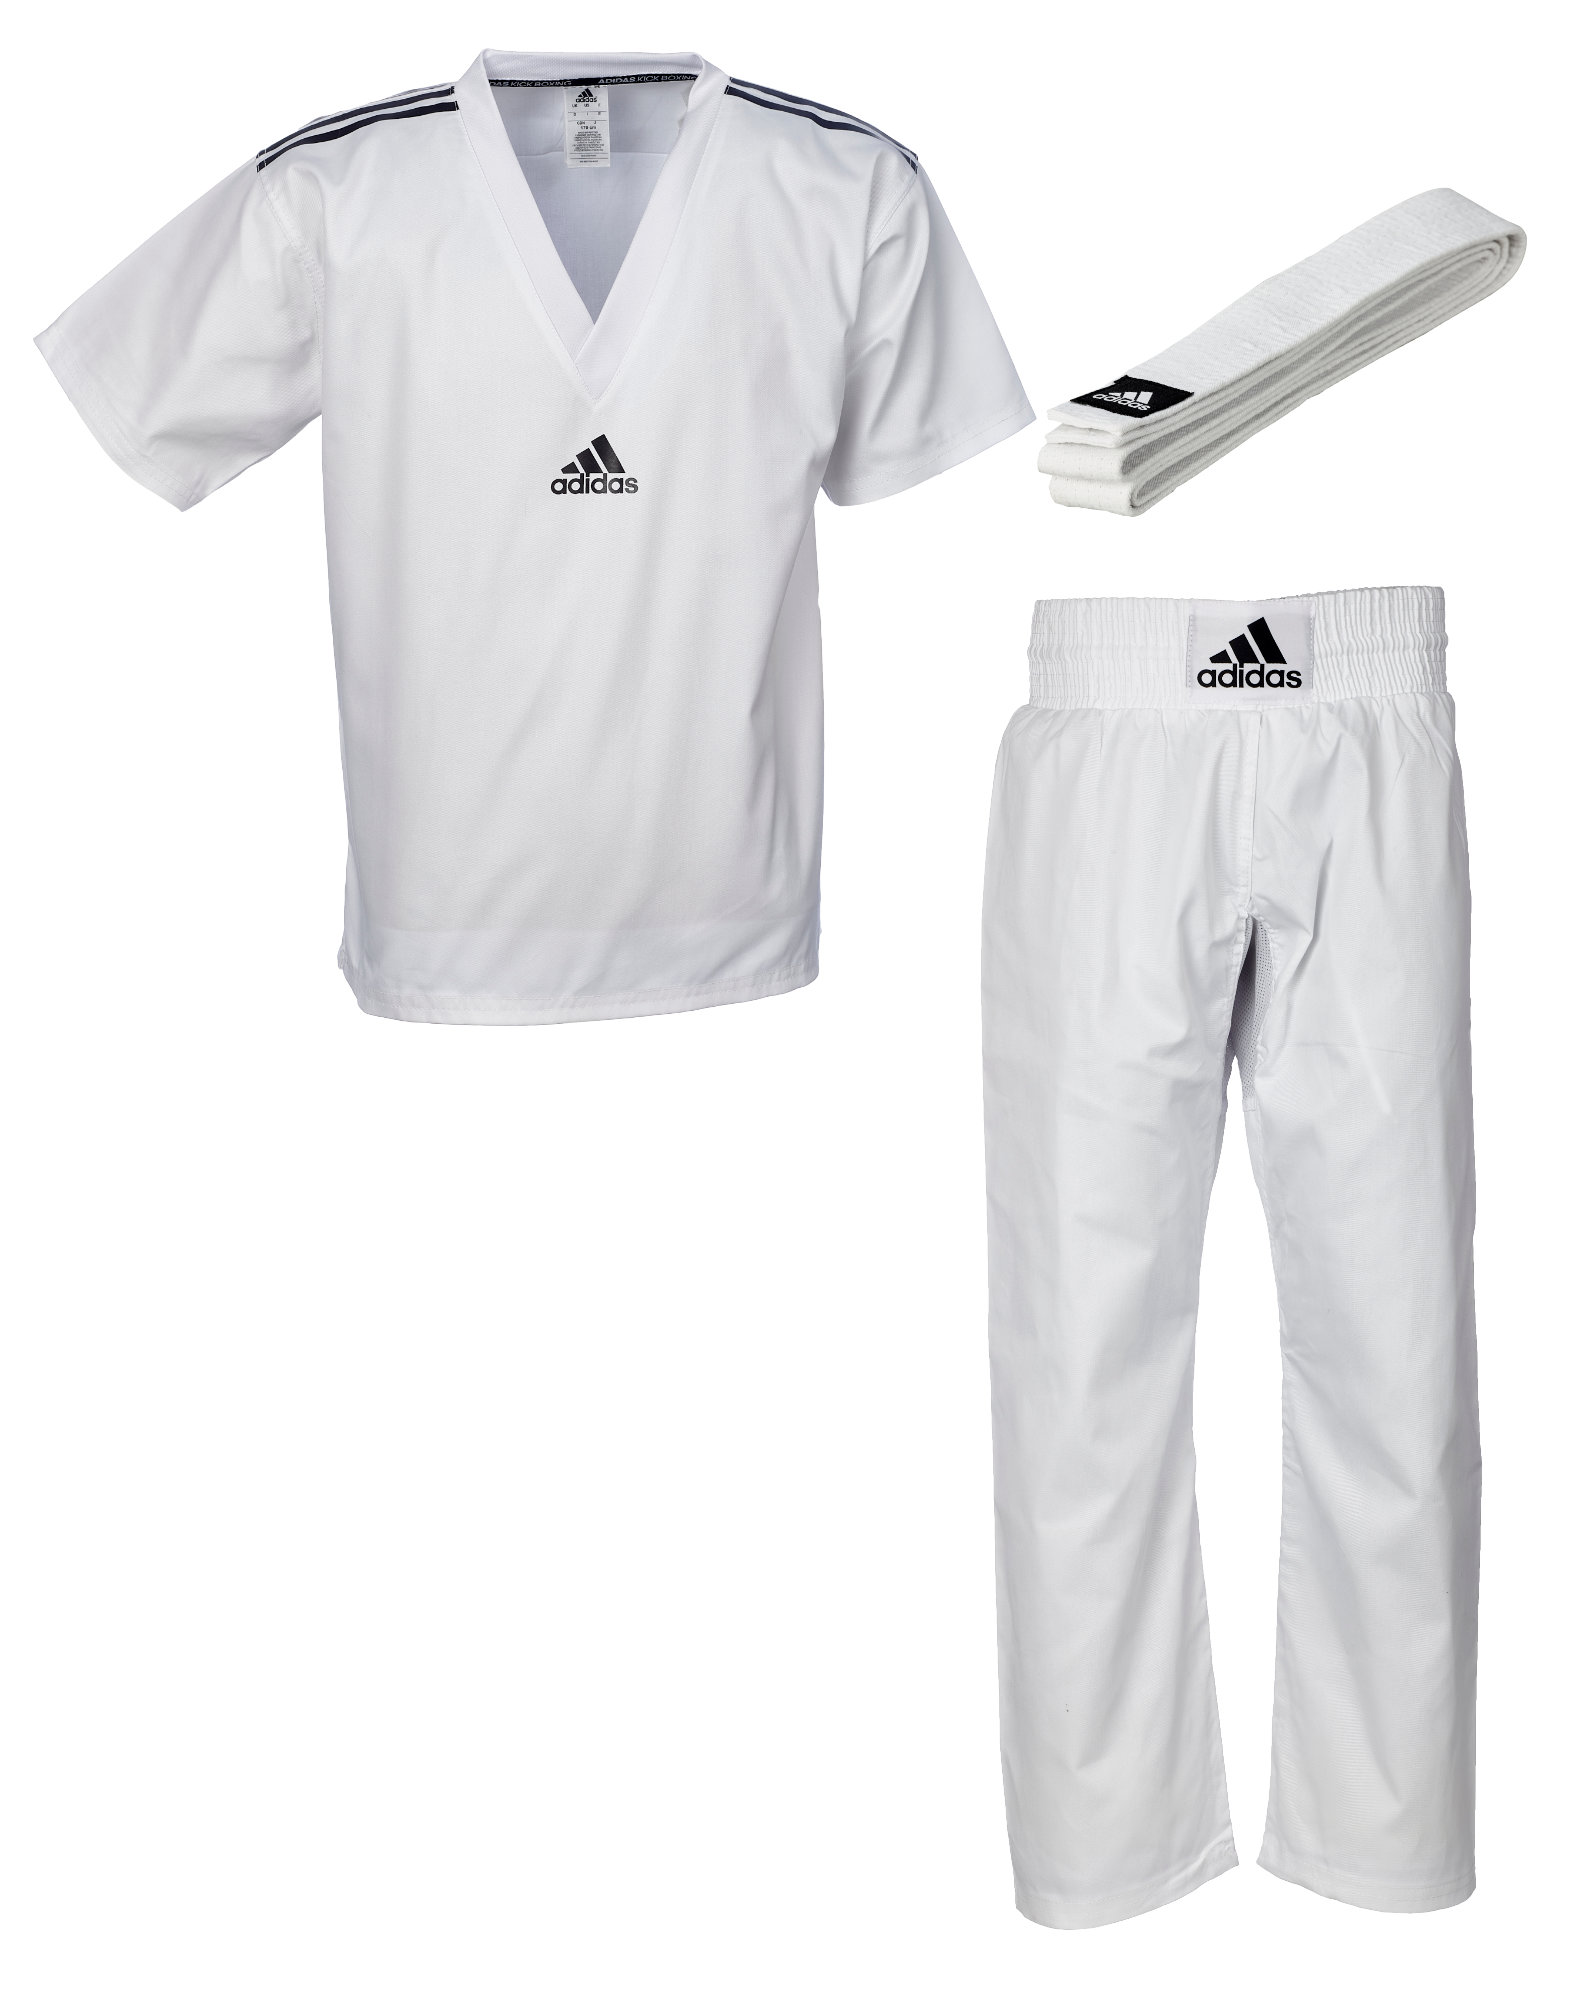 adidas Kickbox-Uniform "Club" weiß, adiKBUN20